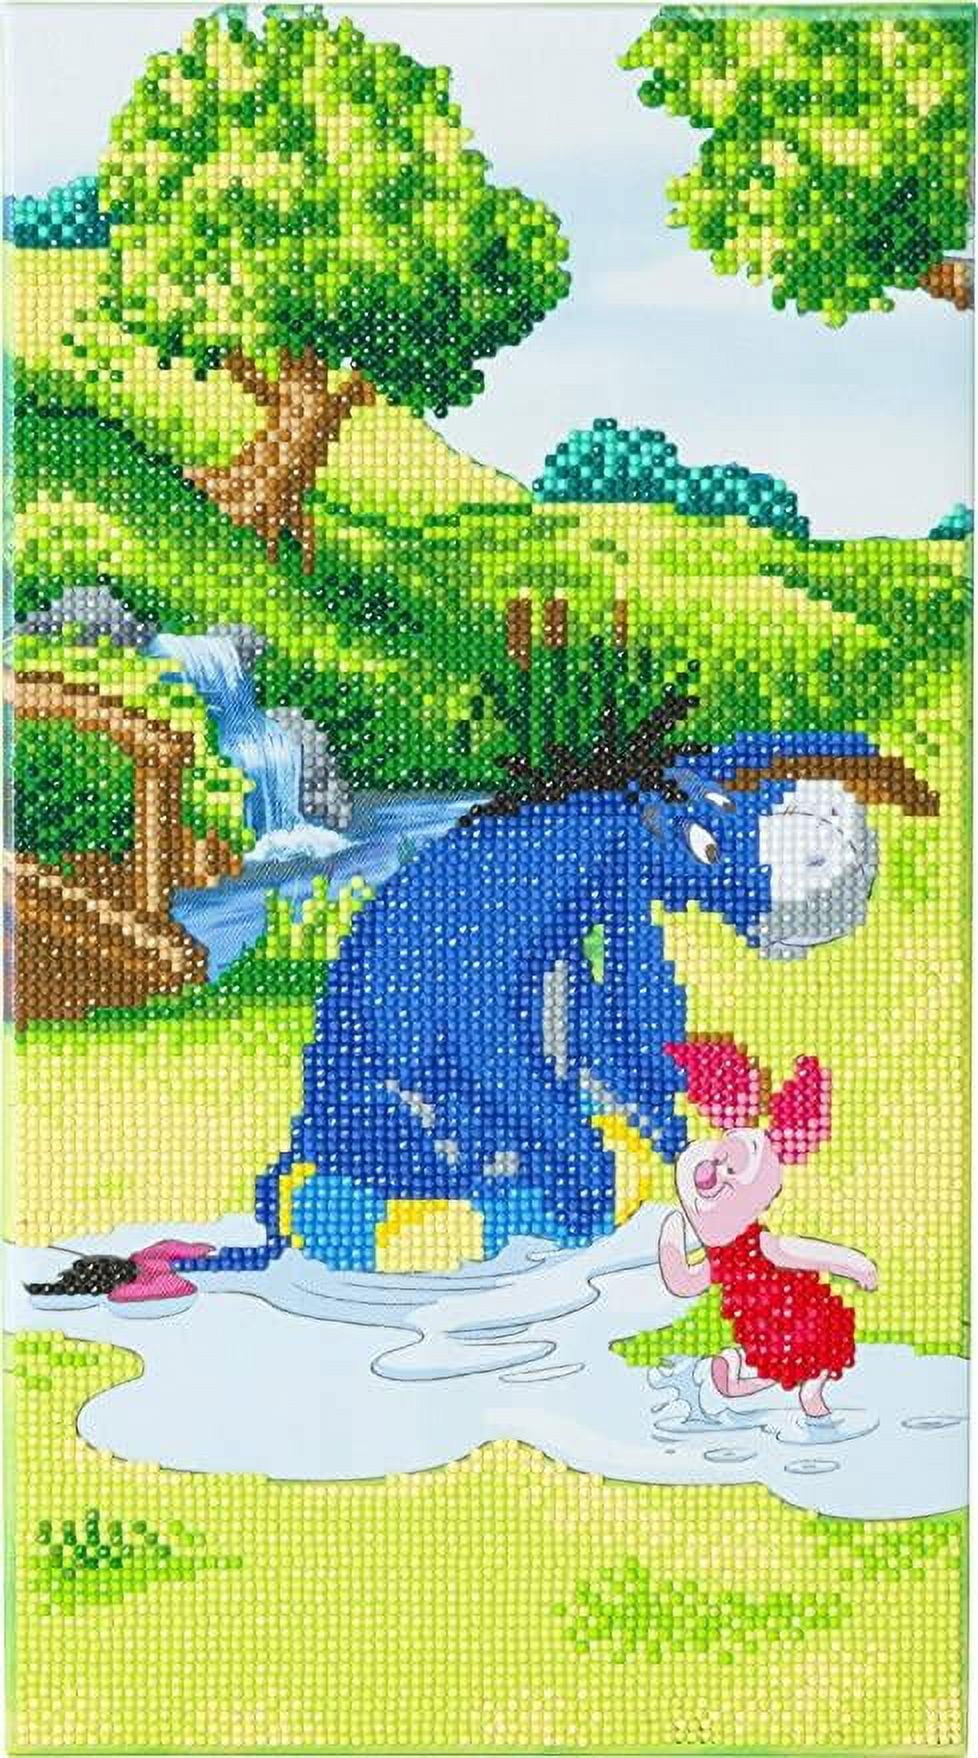 Stitch Disney Crystal Art Buddies Series 1 – Craft Buddy